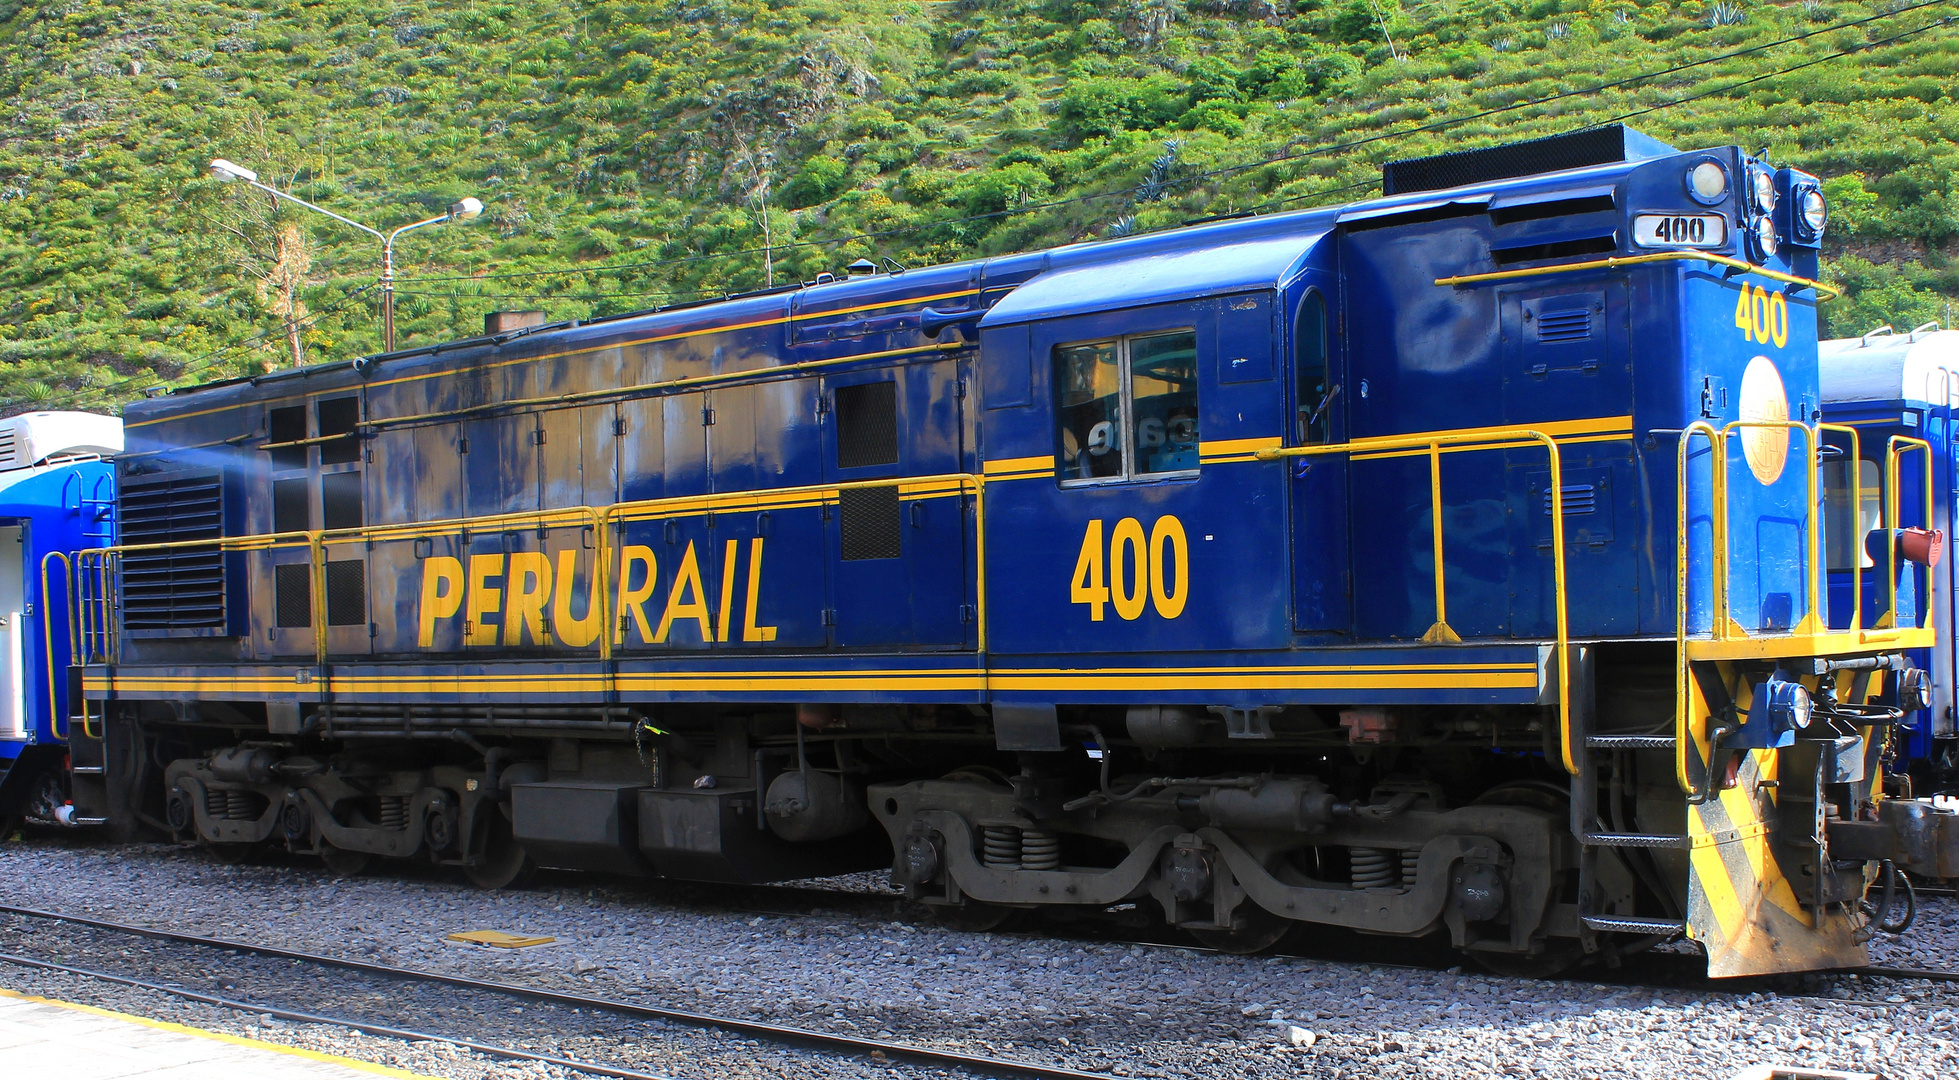 Peru rail!!!